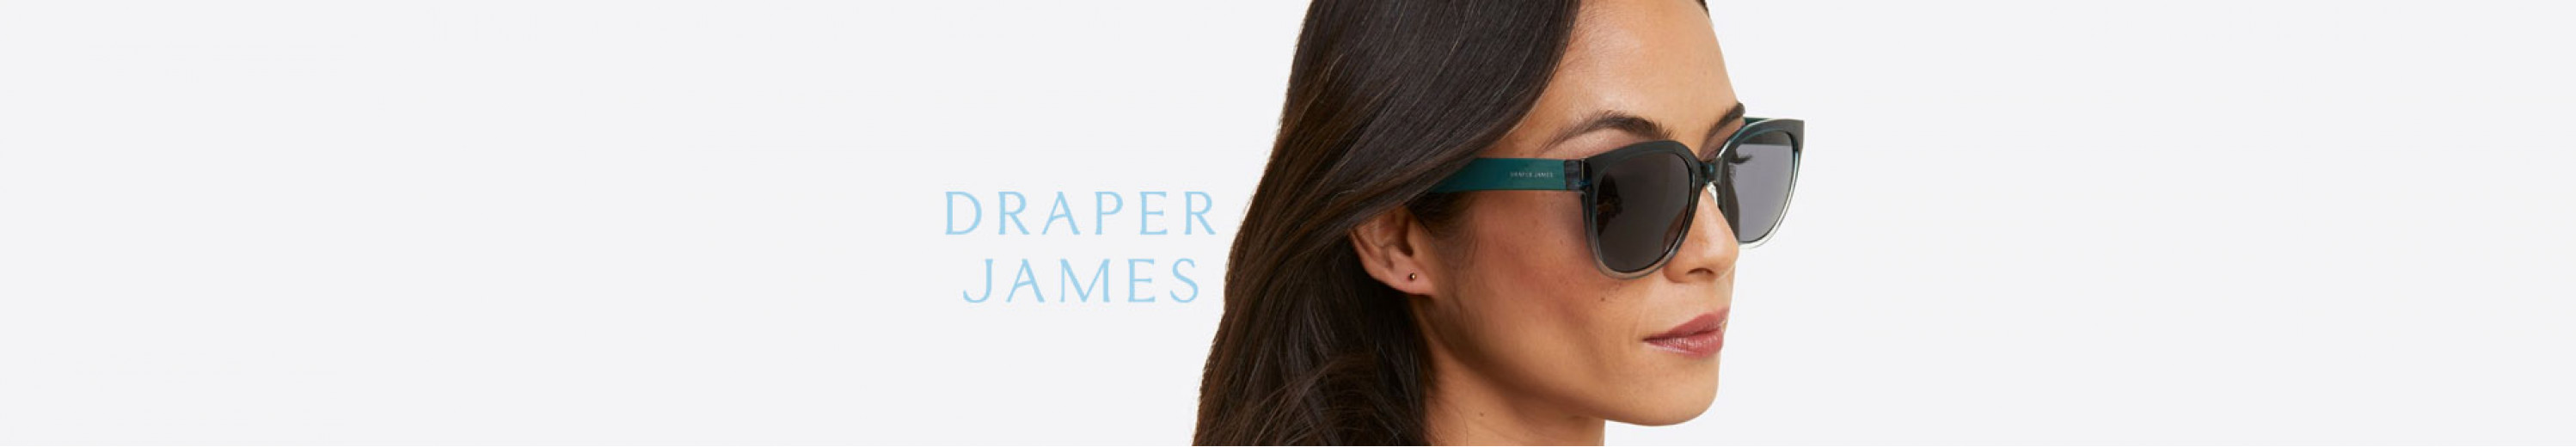 Draper James Sunglasses for Women